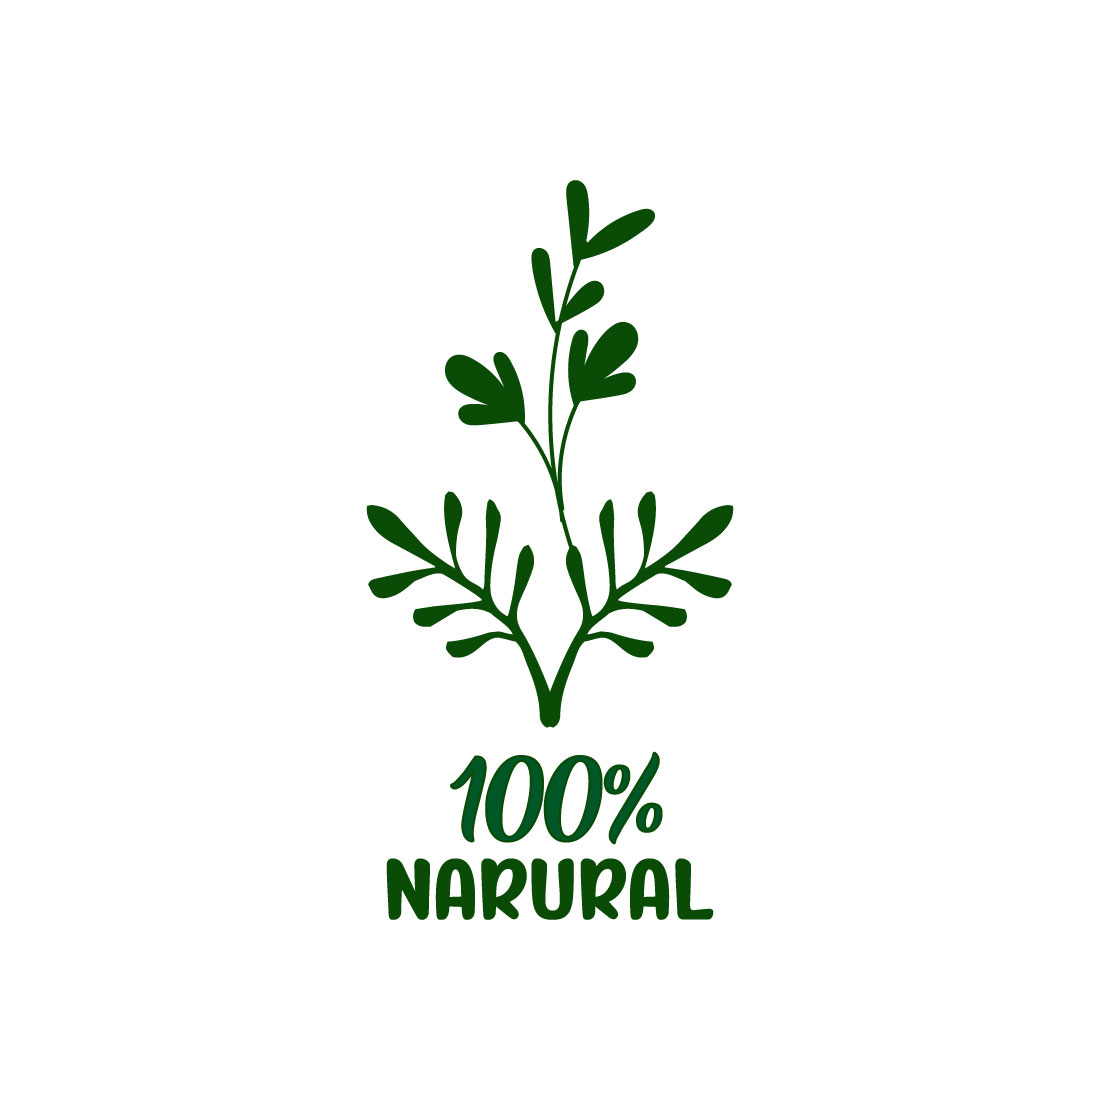 Free botanical leaves logo cover image.